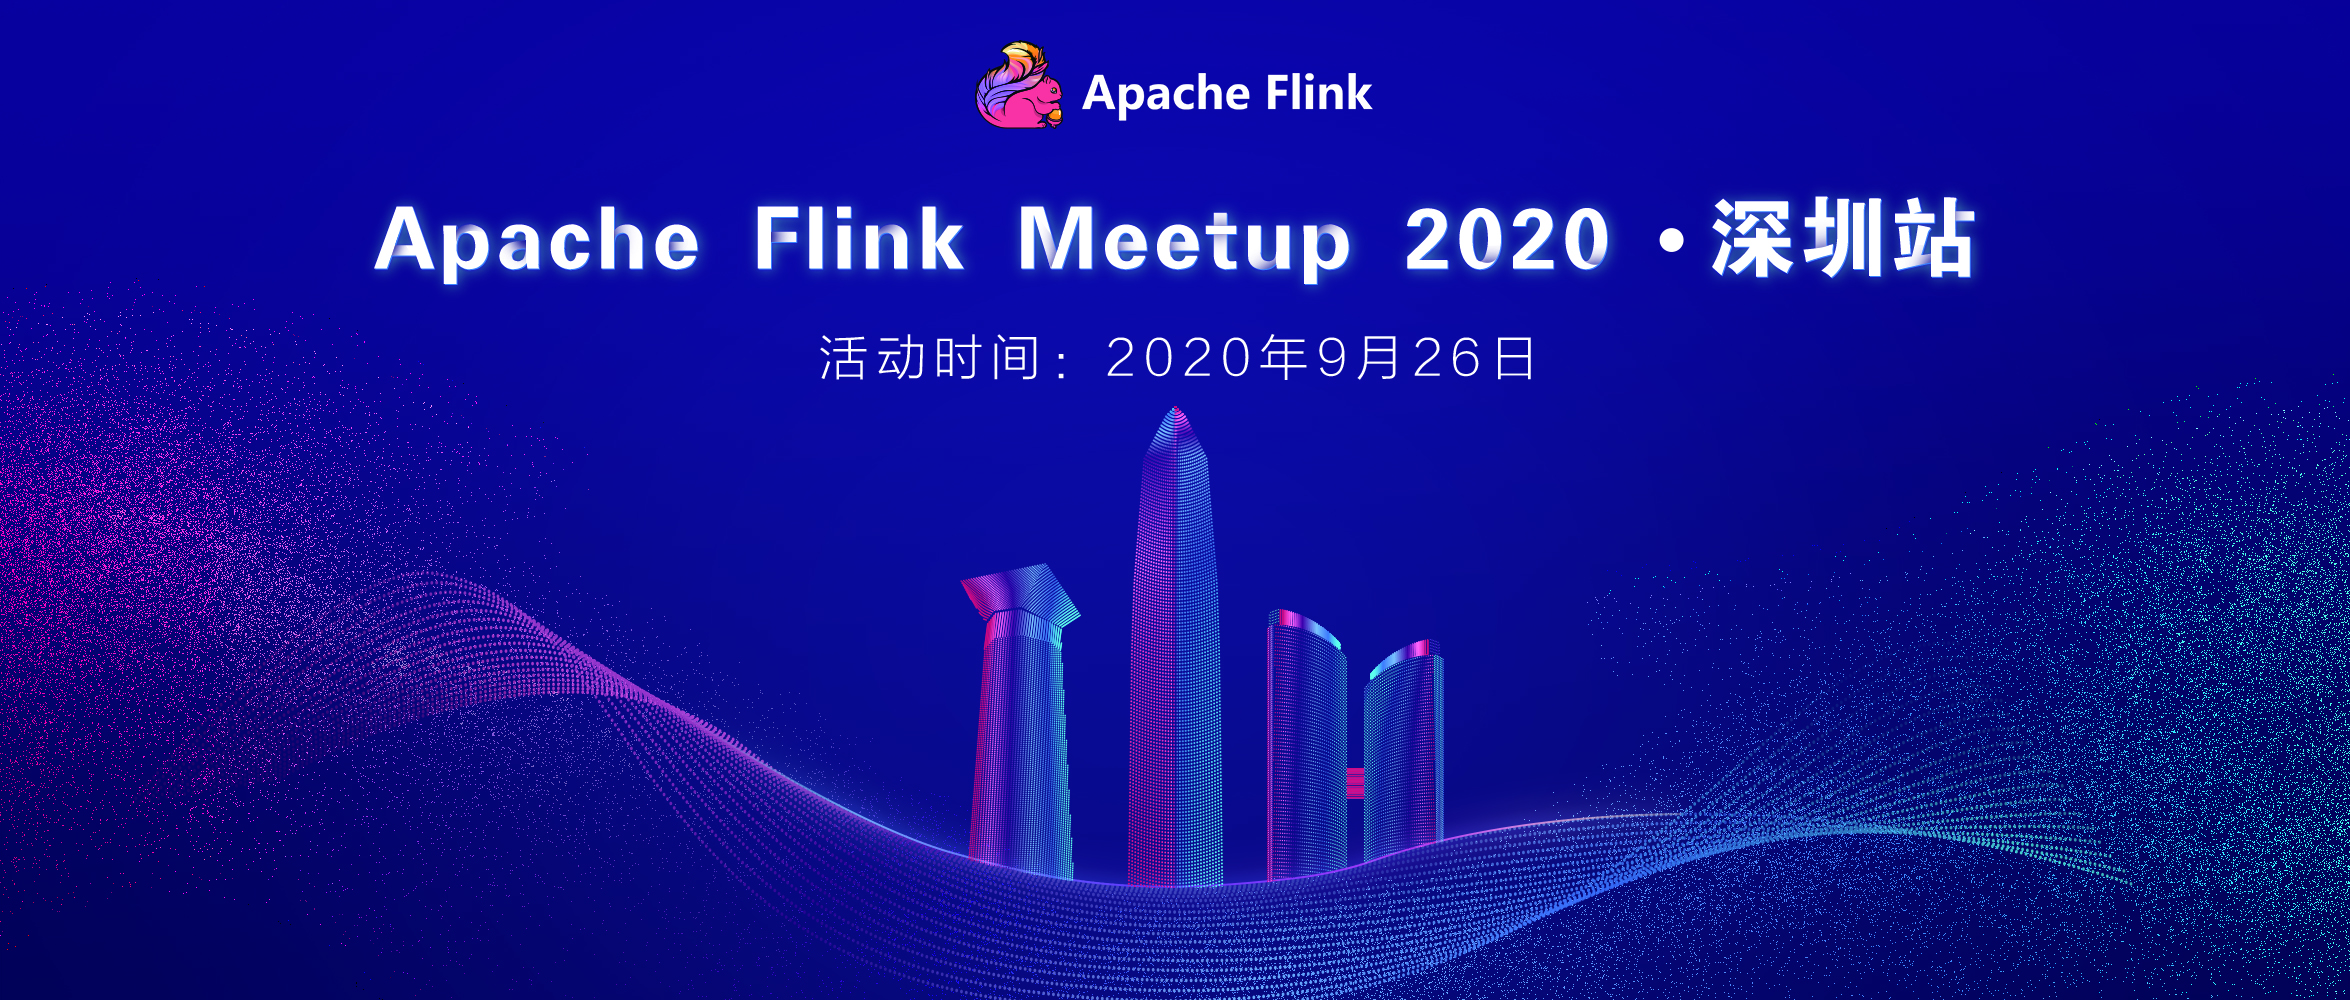 社区活动 | Apache Flink Meetup·深圳站，锁定 Flink 最佳实践